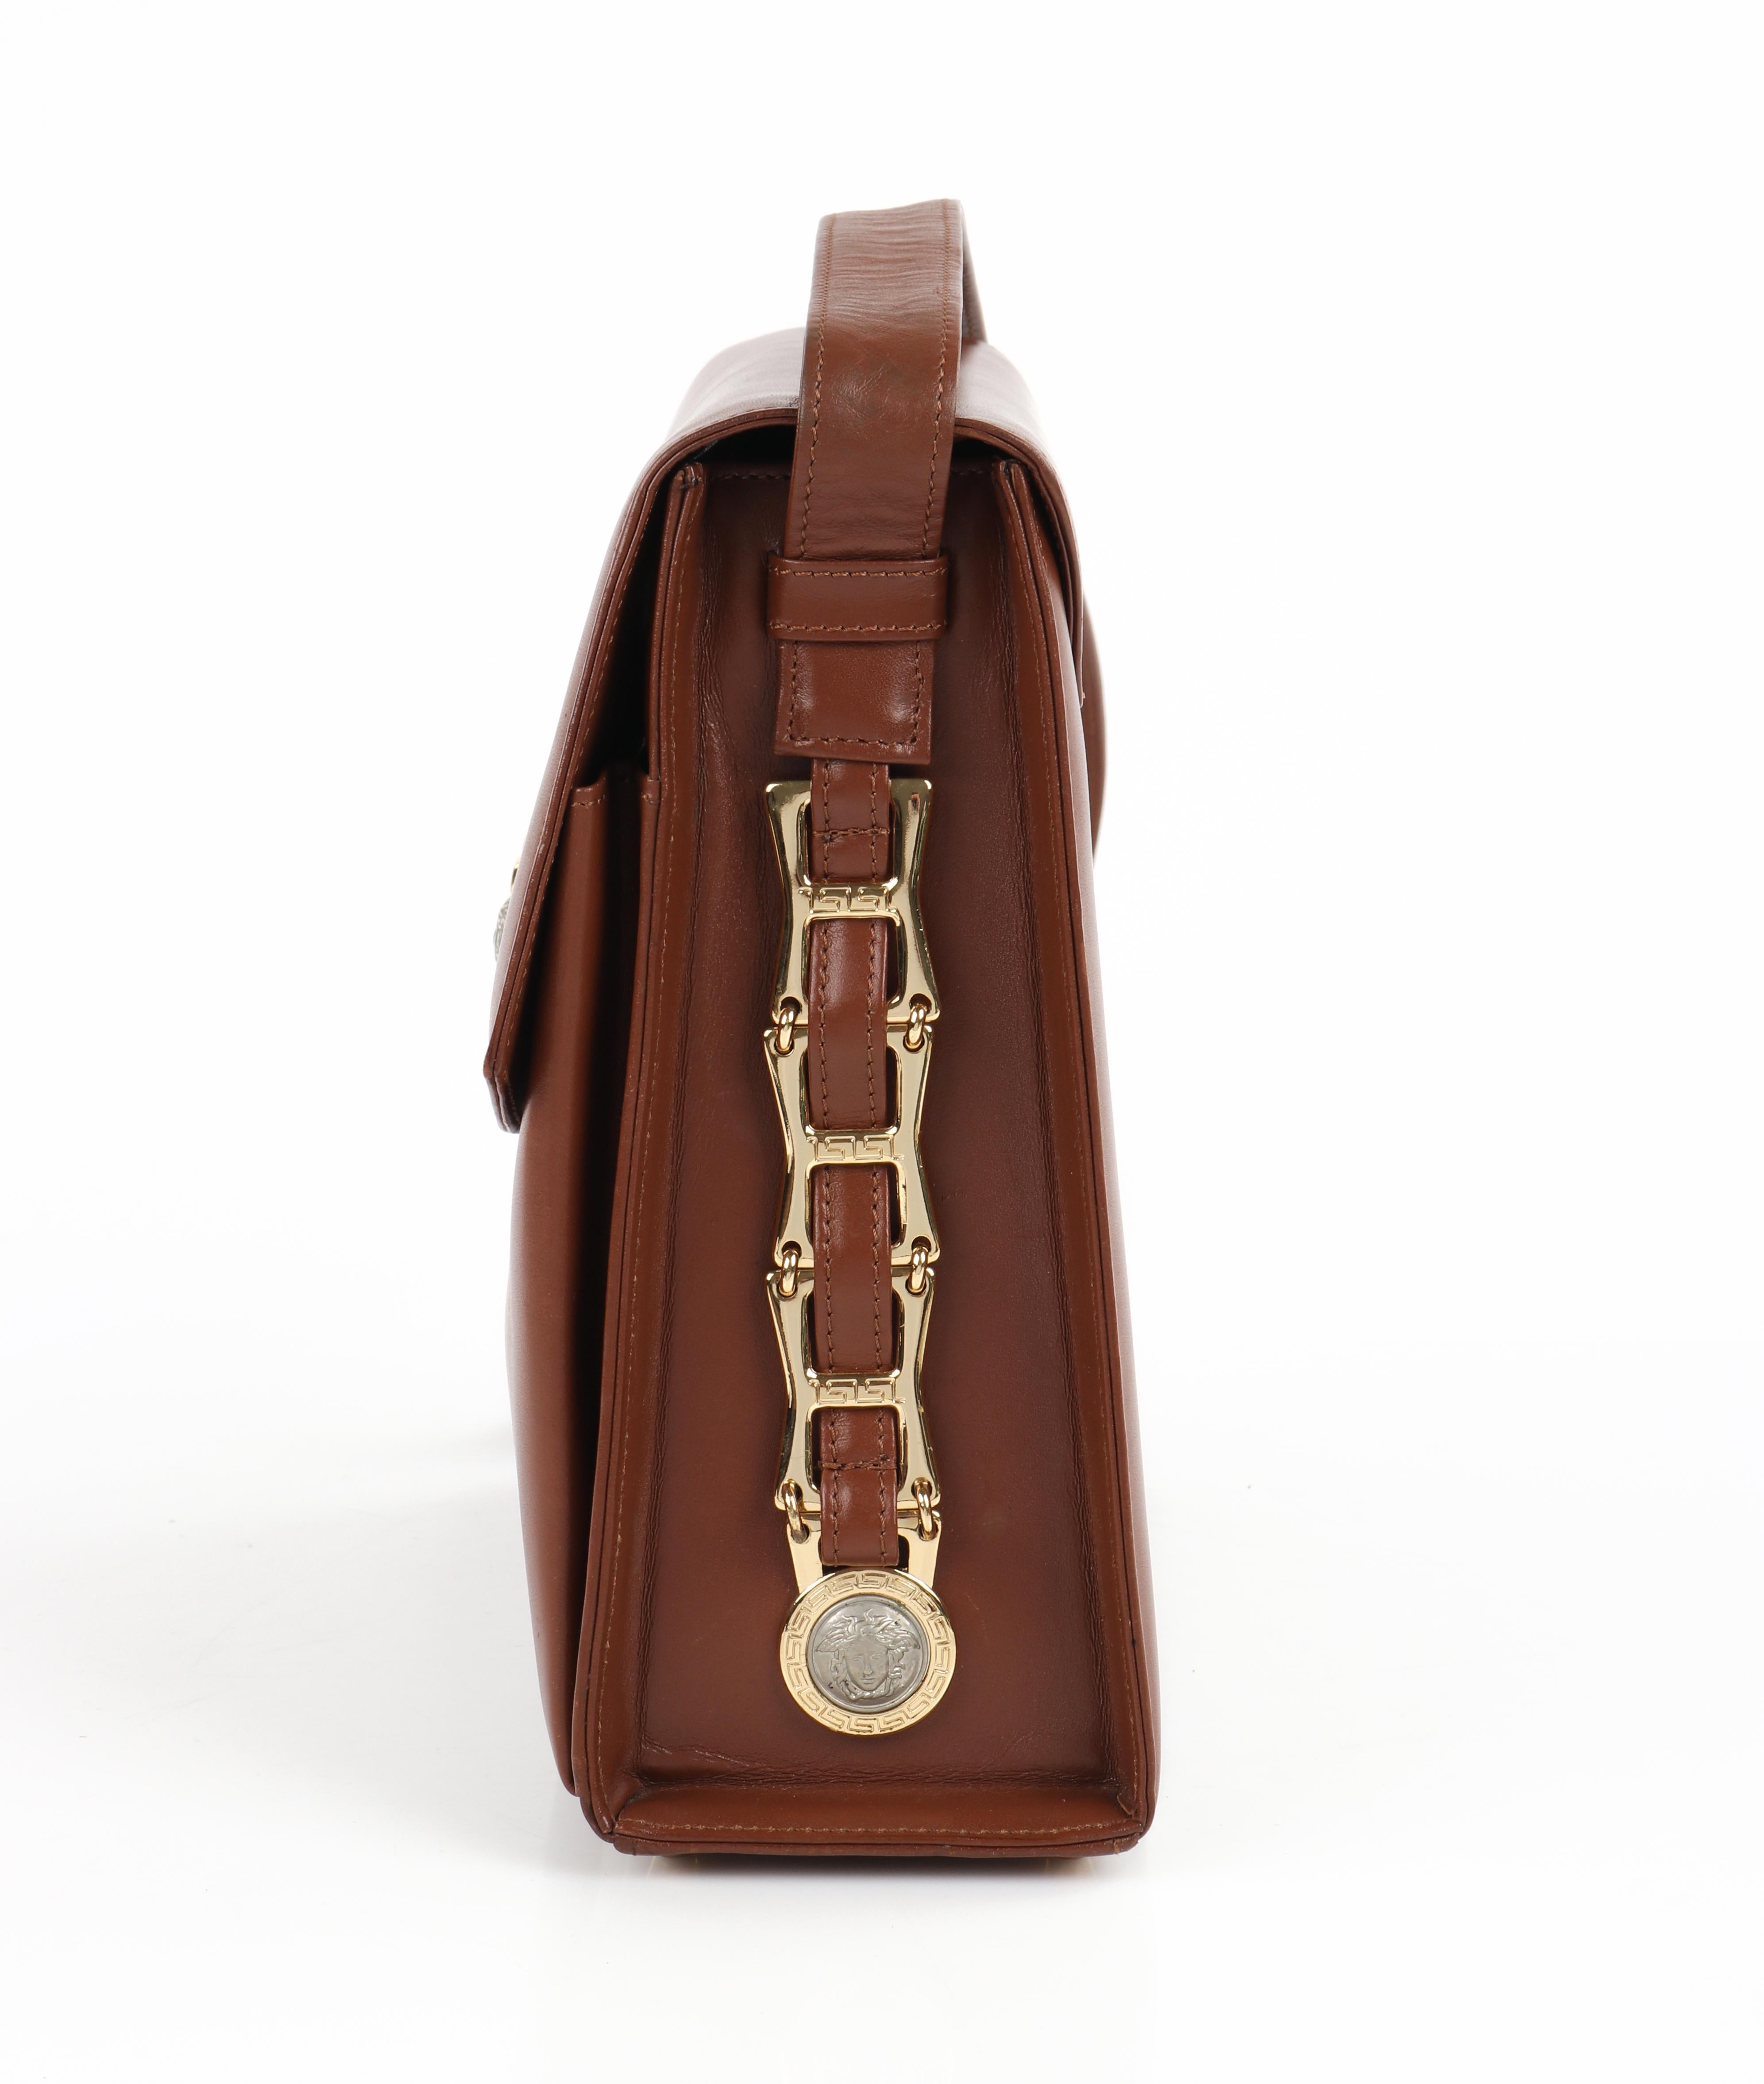 GIANNI VERSACE c.1993 Brown Leather Medusa Emblem Coin Lock Shoulder Bag Purse For Sale 3